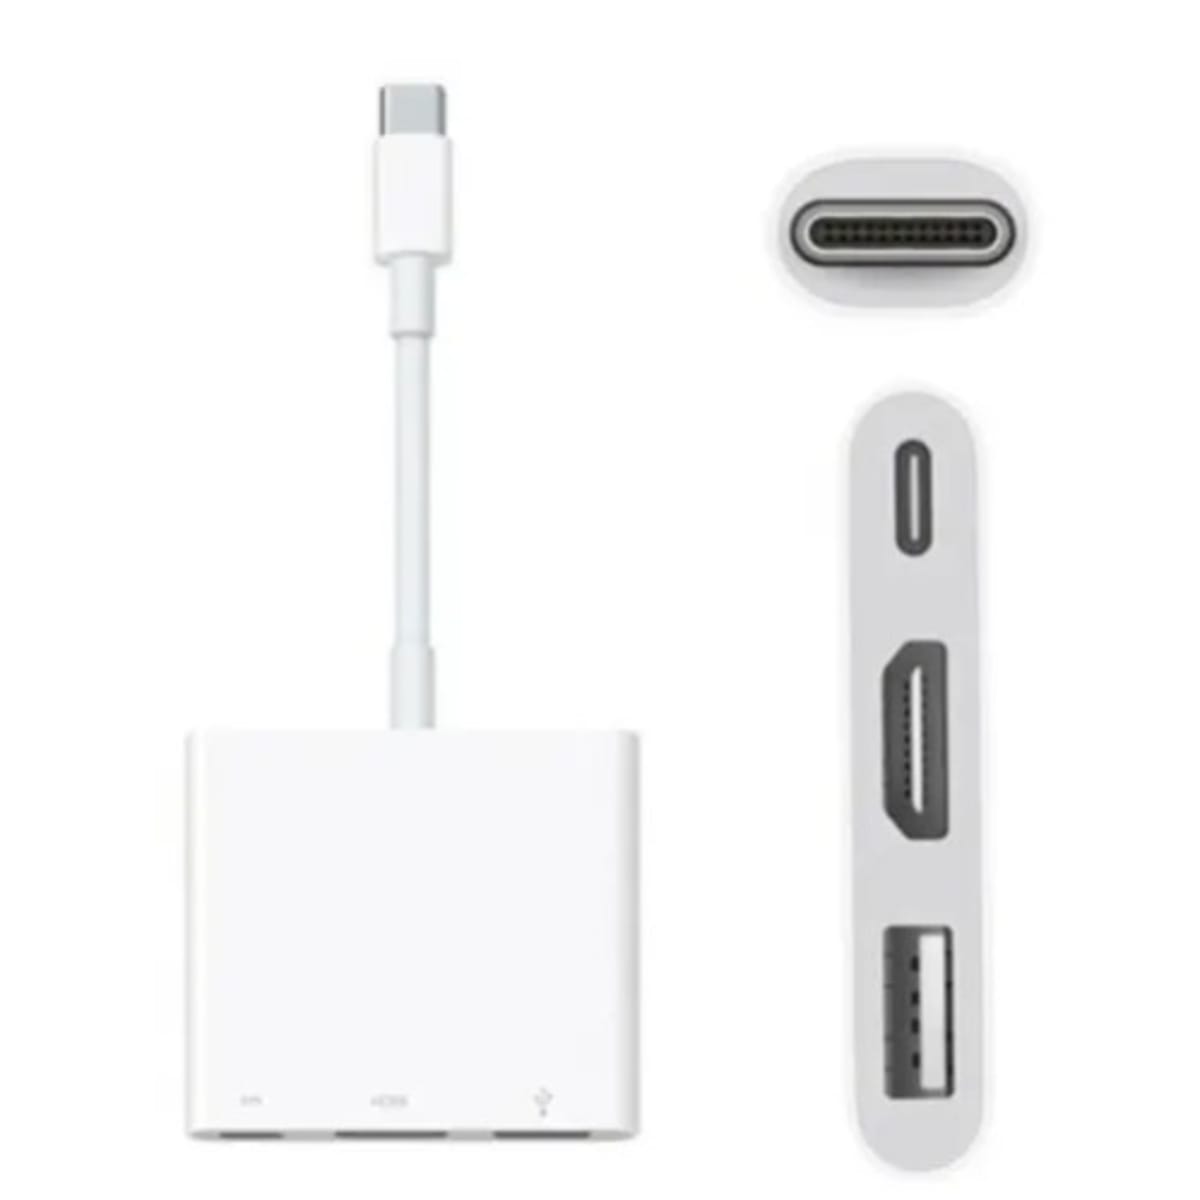 USB-C Digital AV Multiport Adapter - Apple